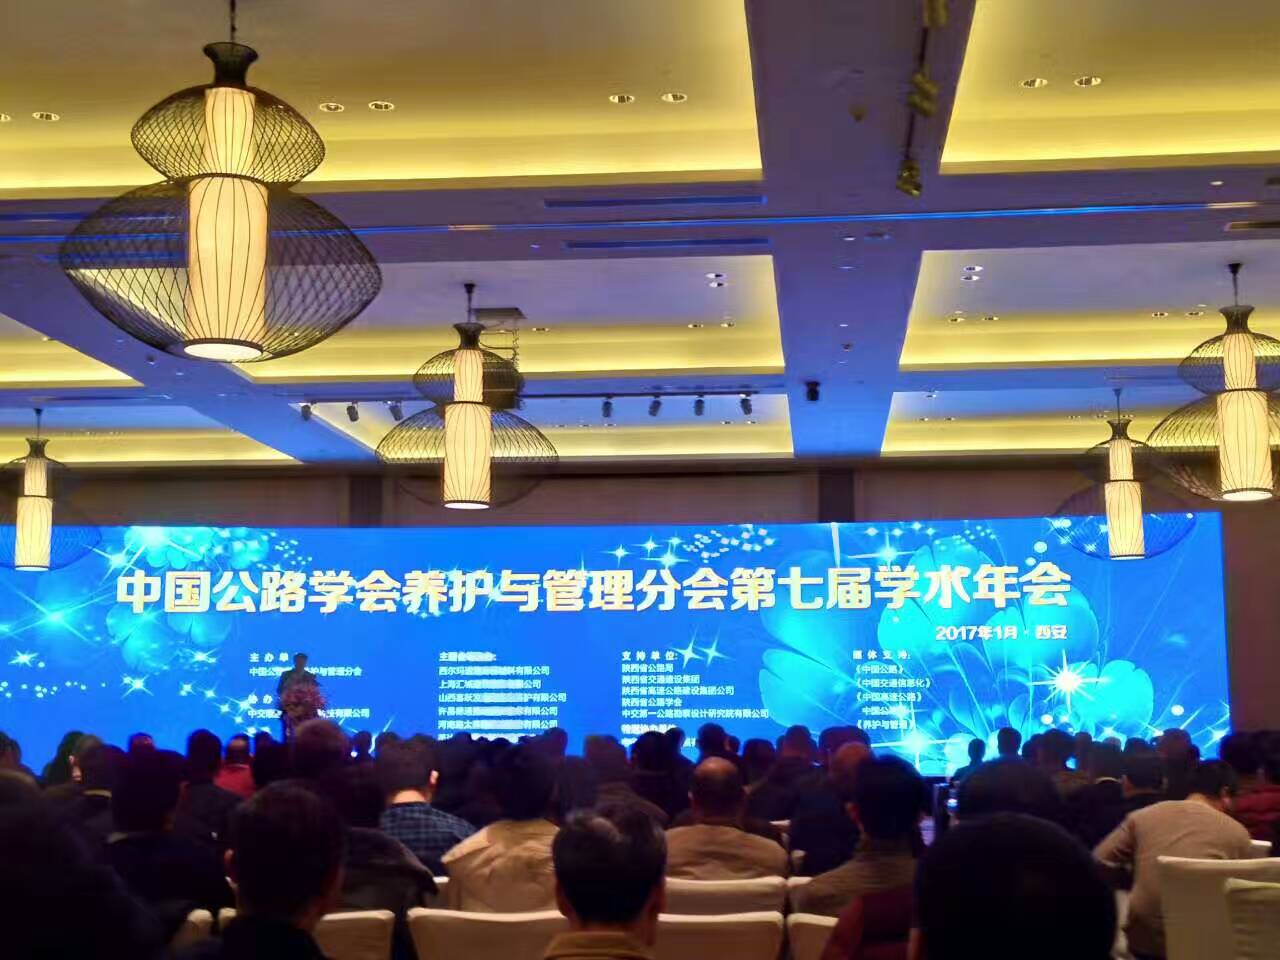 熱烈祝賀中國公路學會養護與管理分會第七屆學術年會在西安召開